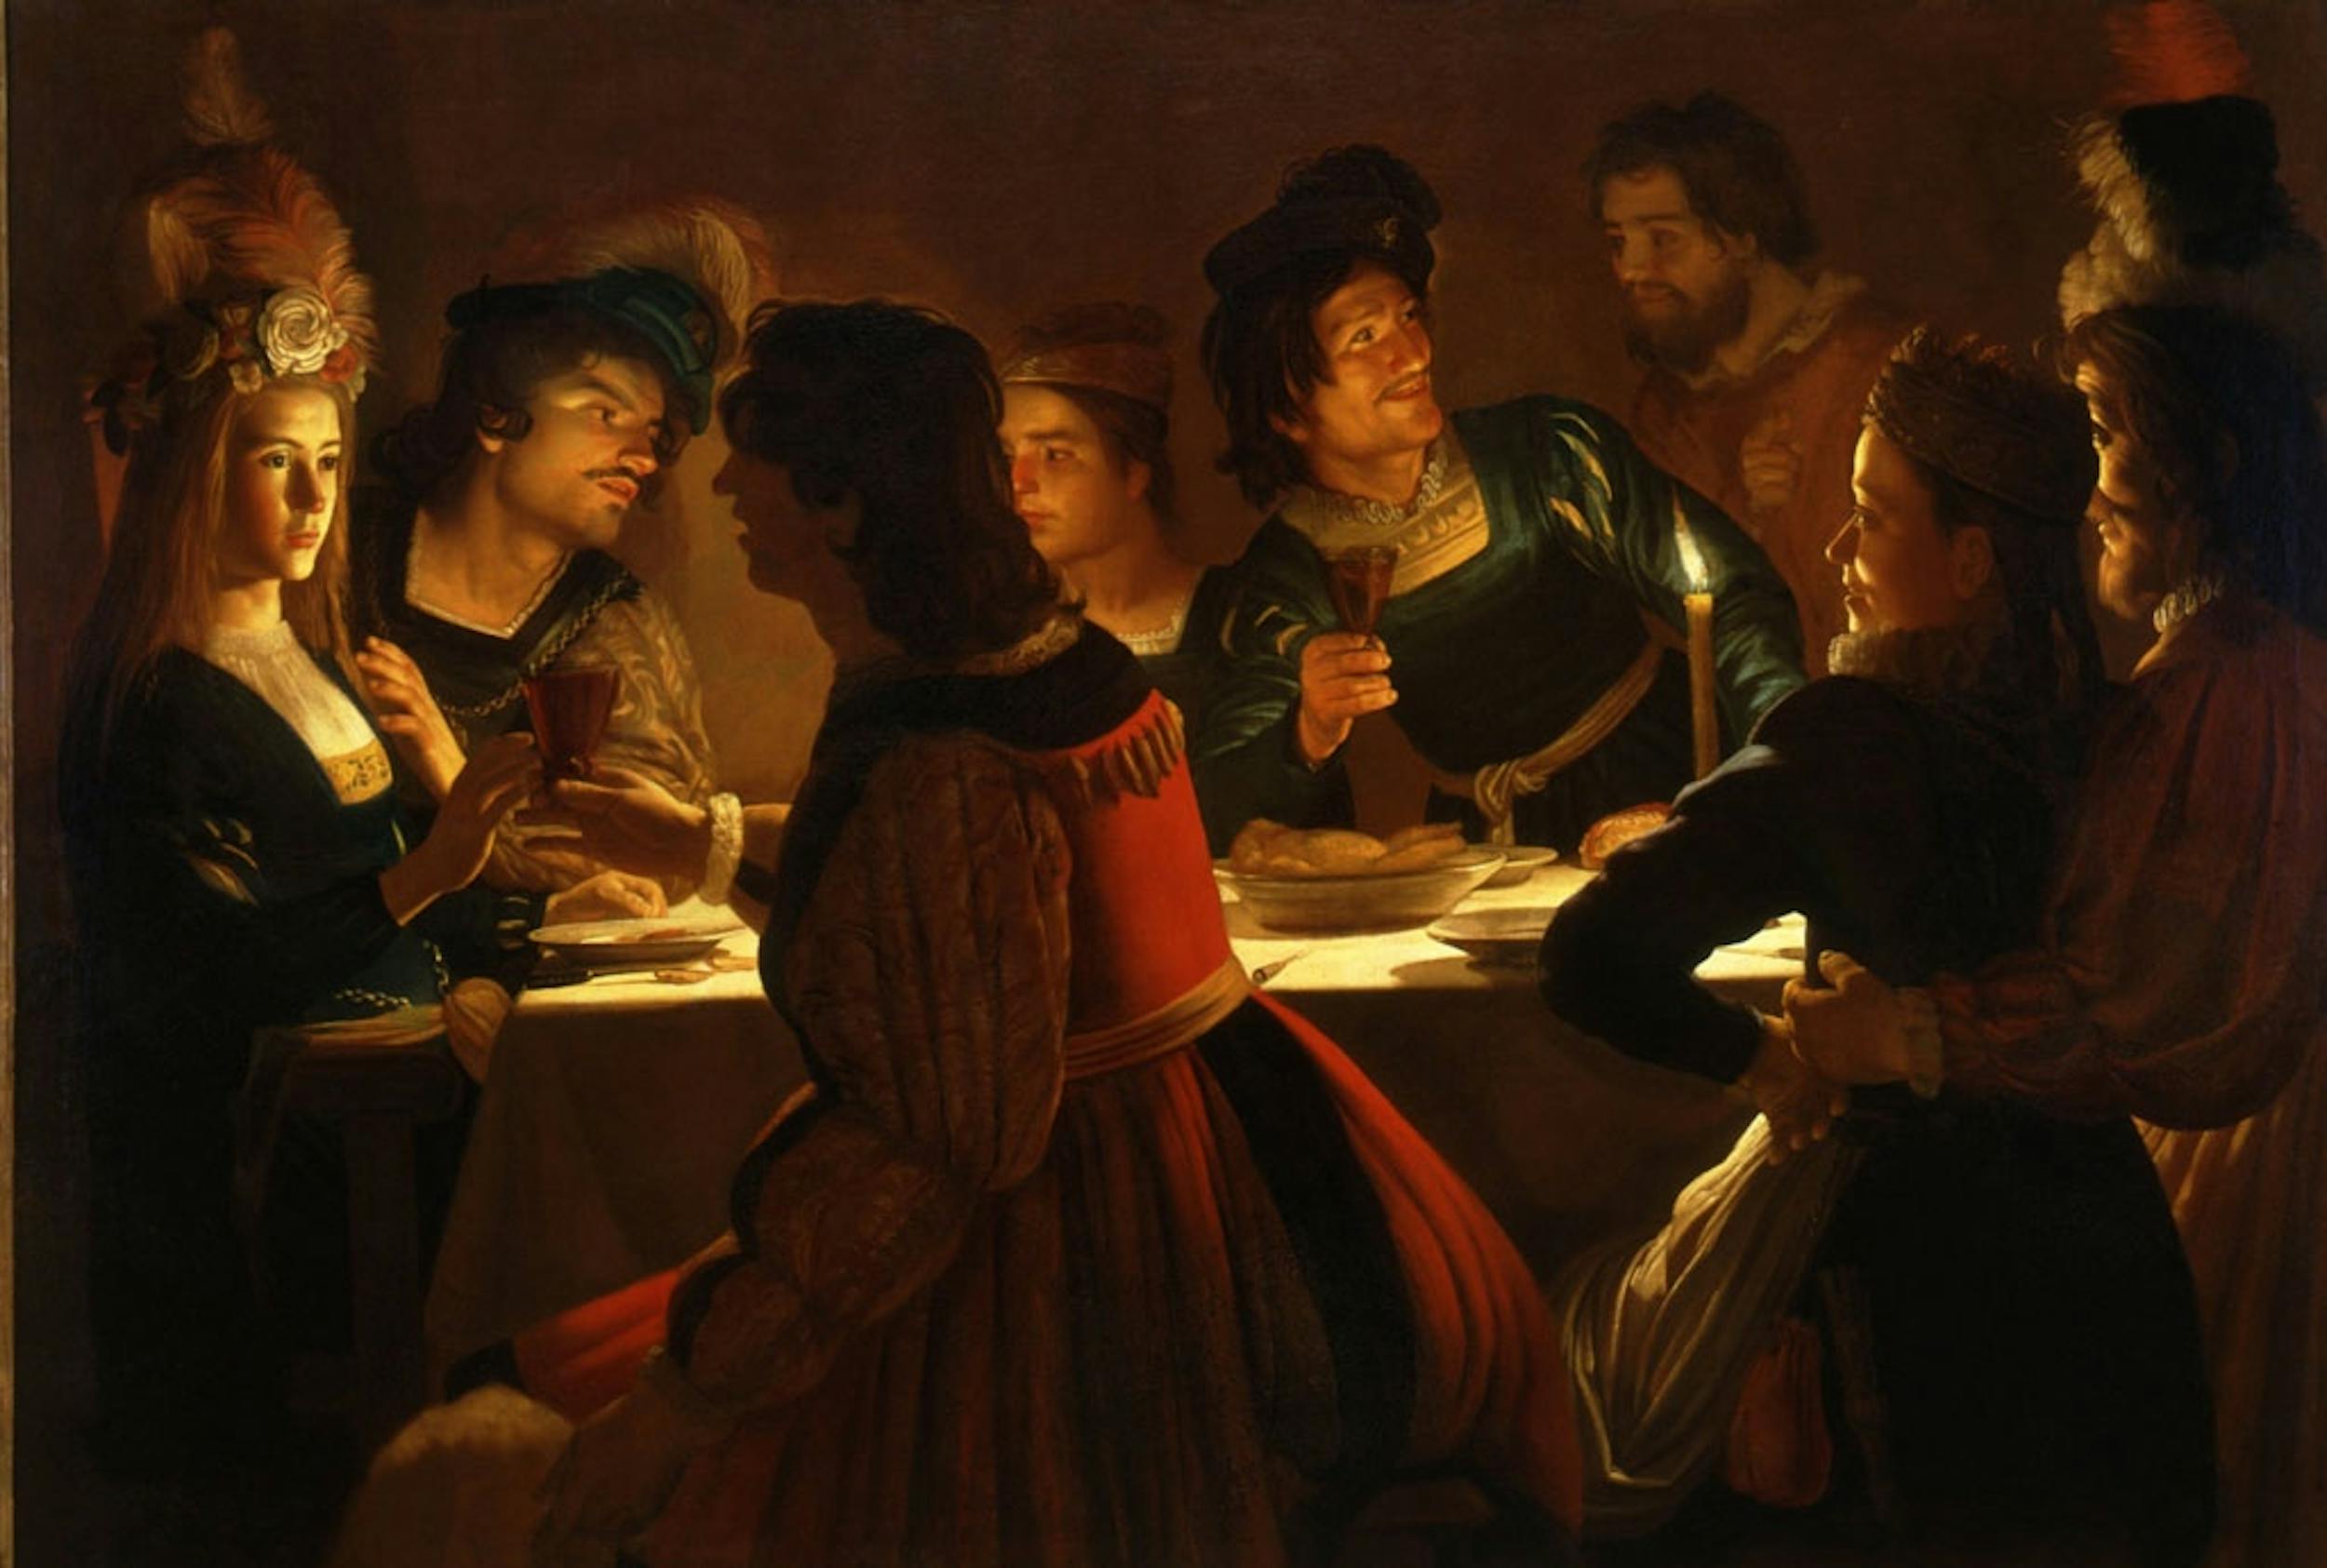 Gerrit van Honthorst detto Gherardo delle Notti (Utrecht 1592 - 1656), Banchetto a lume di candela, 1617 ca., olio su tela, Galleria degli Uffizi, Firenze.